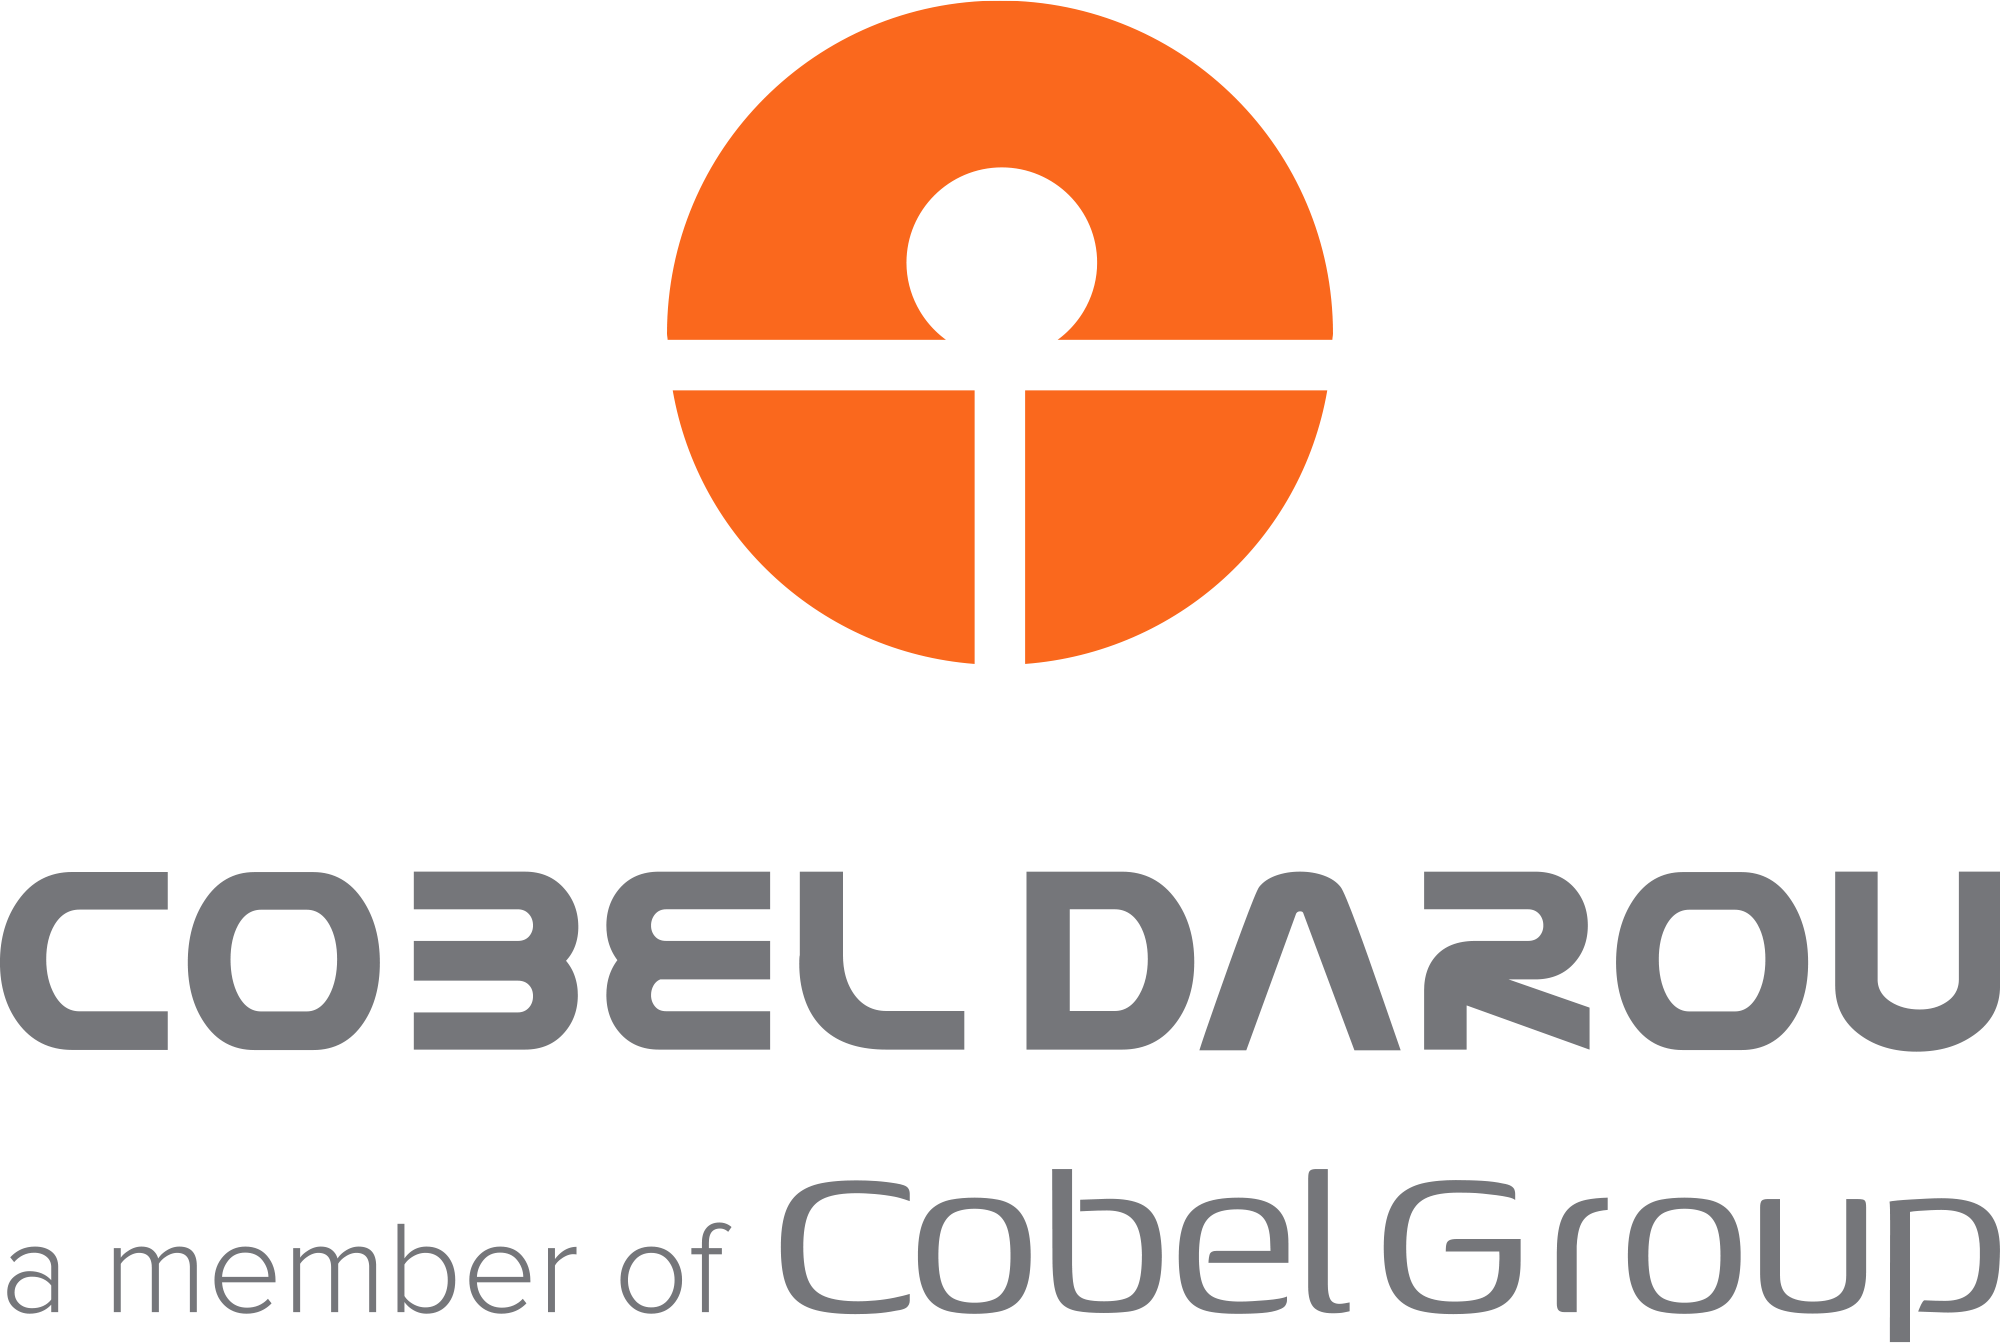 حسابدار | Accountant - شرکت کوبل دارو | Cobel Darou